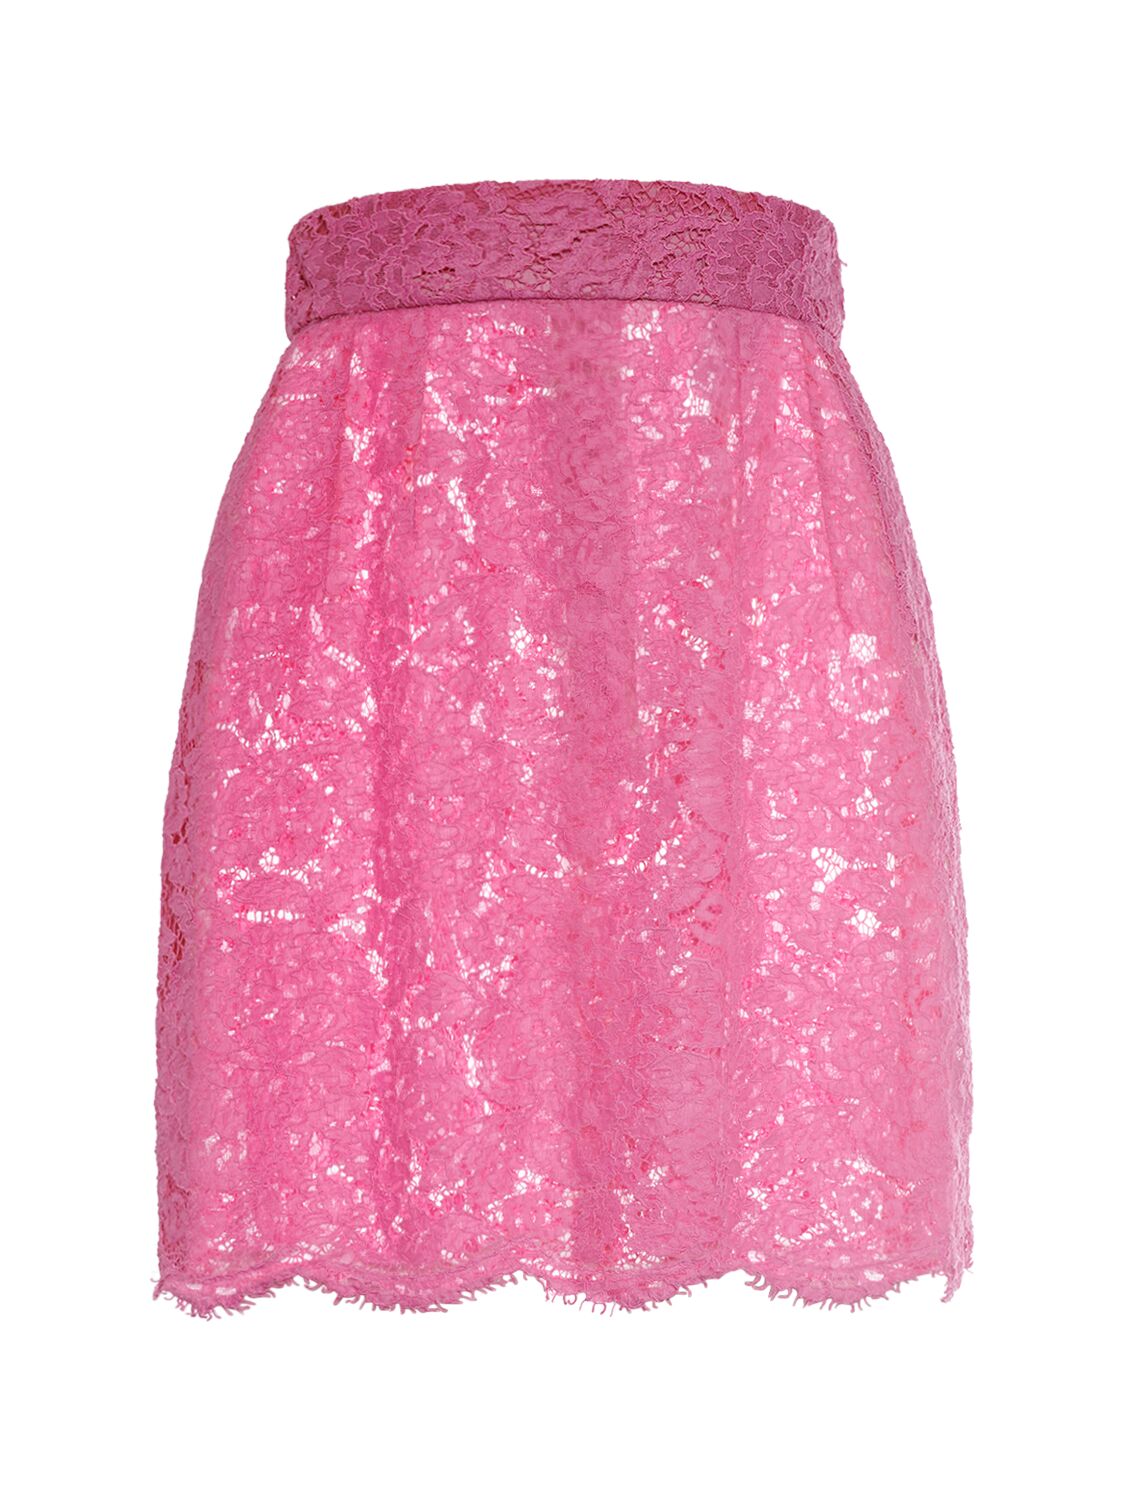 Floral & Dg Stretch Lace Mini Skirt